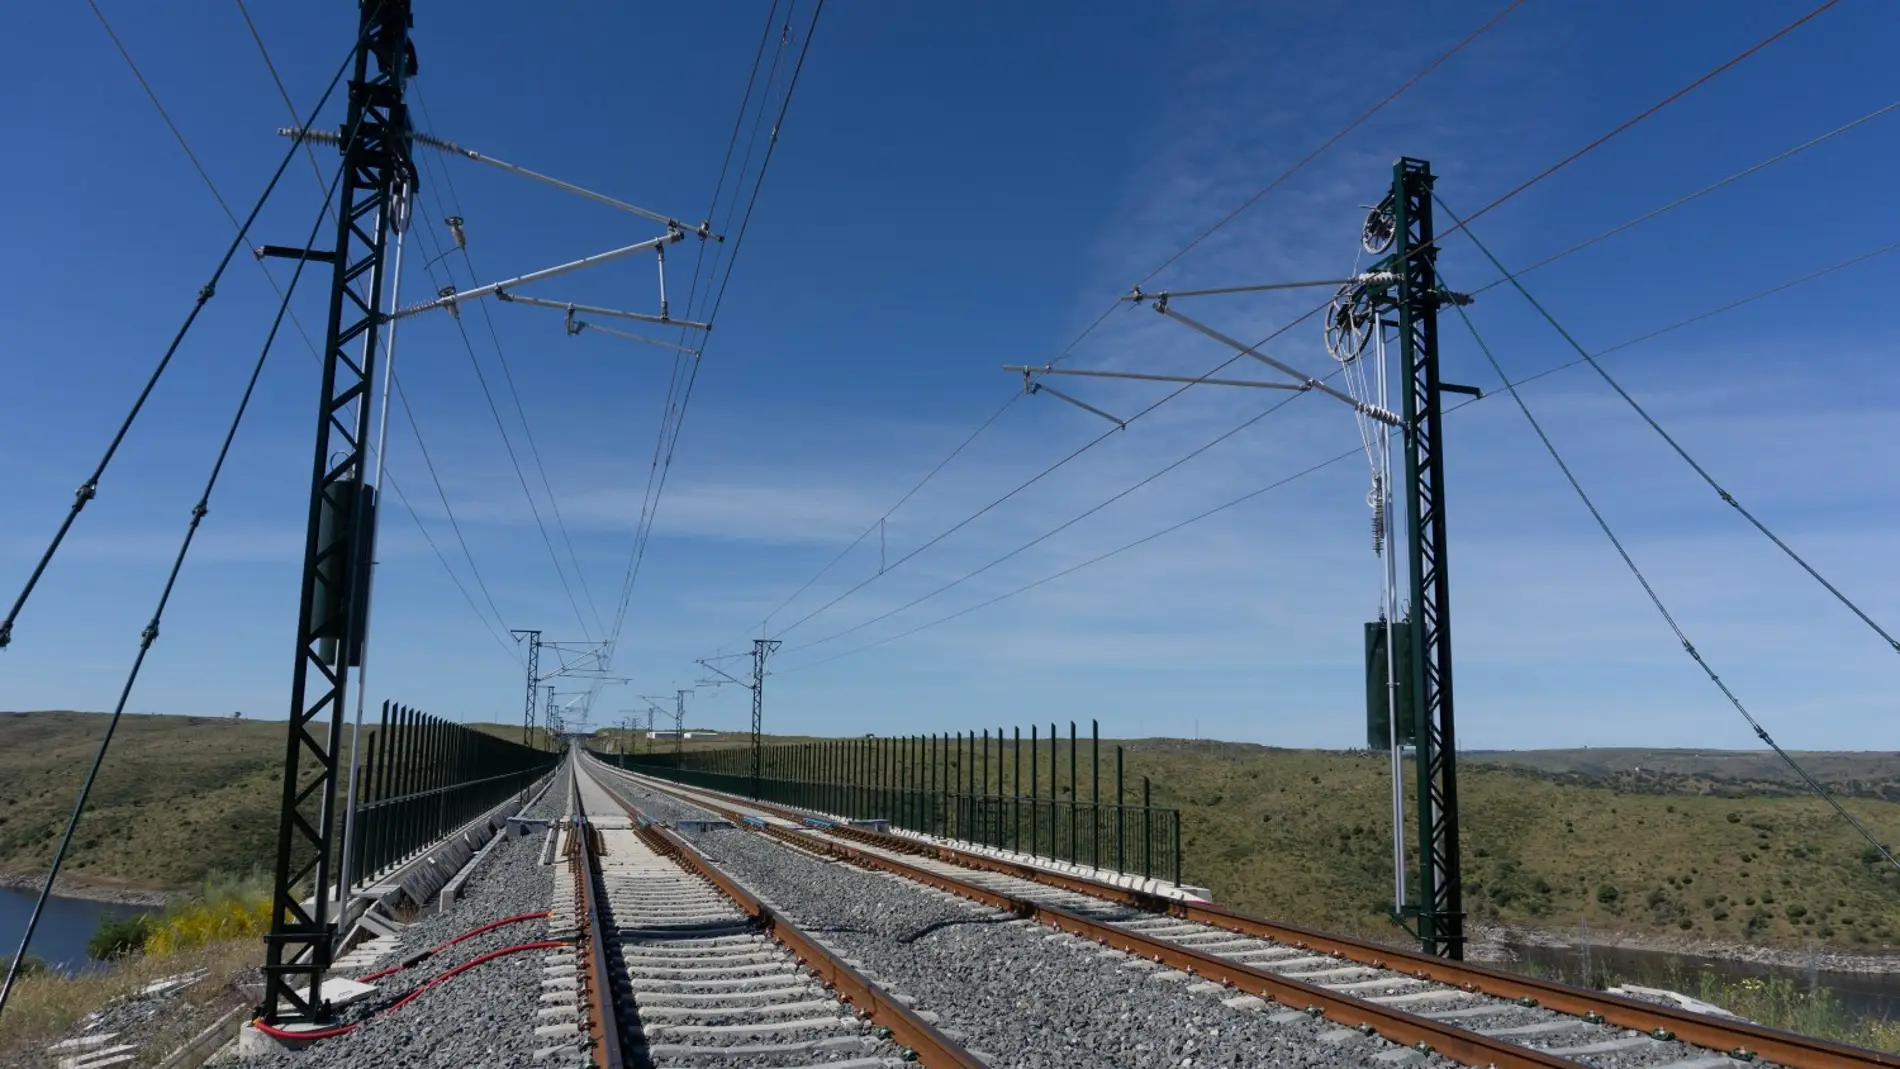 El 19 de mayo estarán electrificados ya 112 km de la línea del tren extremeño entre Peñas Blancas y Badajoz